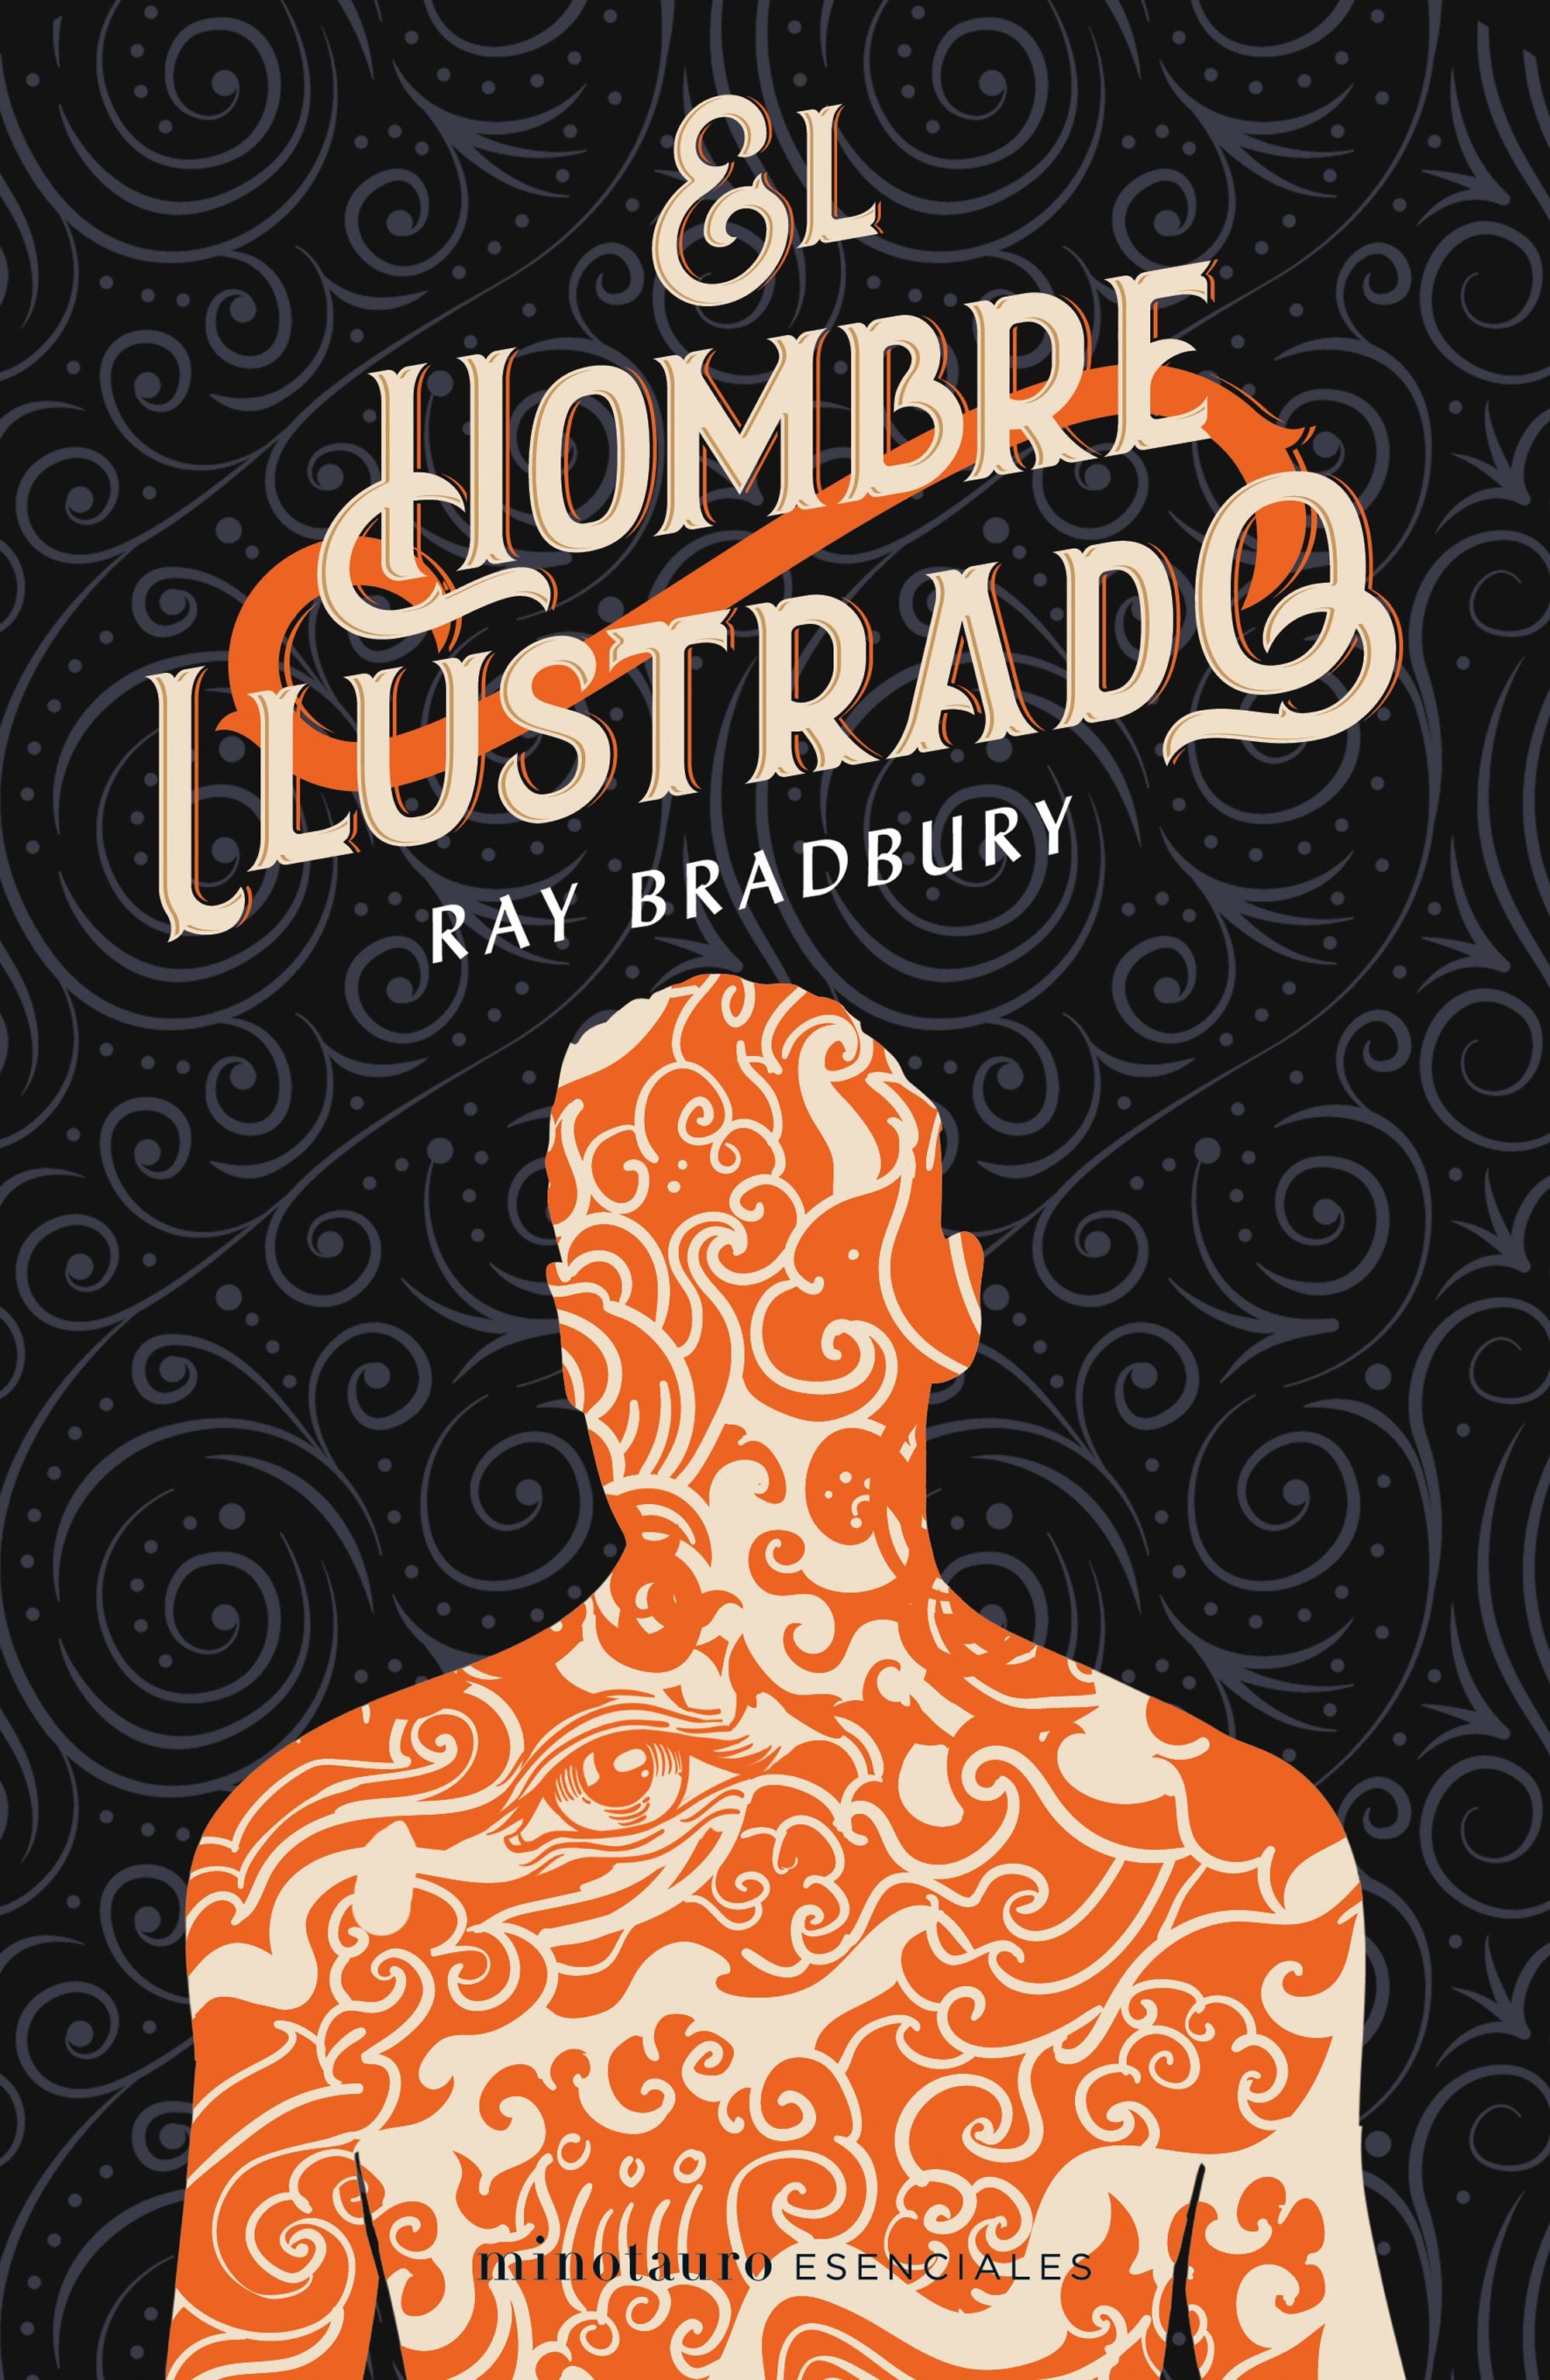 Libro Ray Bradbury - El hombre ilustrado